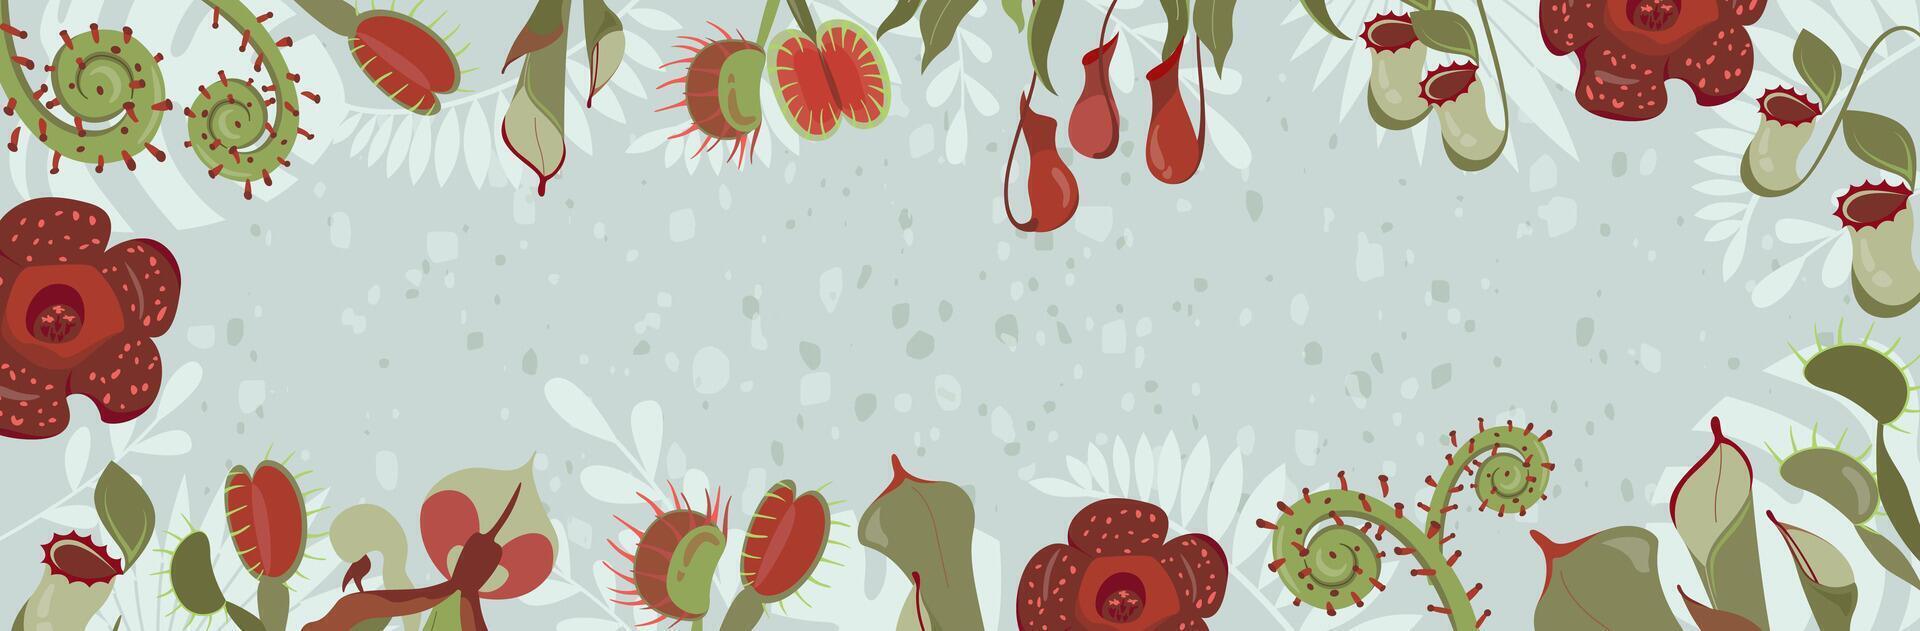 sociaal media post achtergrond. prachtig banier met exotisch vleesetend planten. kader met ongebruikelijk bijzonder wild bloemen rafflesia, nepenthes, Venus vliegenval. sjabloon ontwerp. bewerkbare vector illustratie